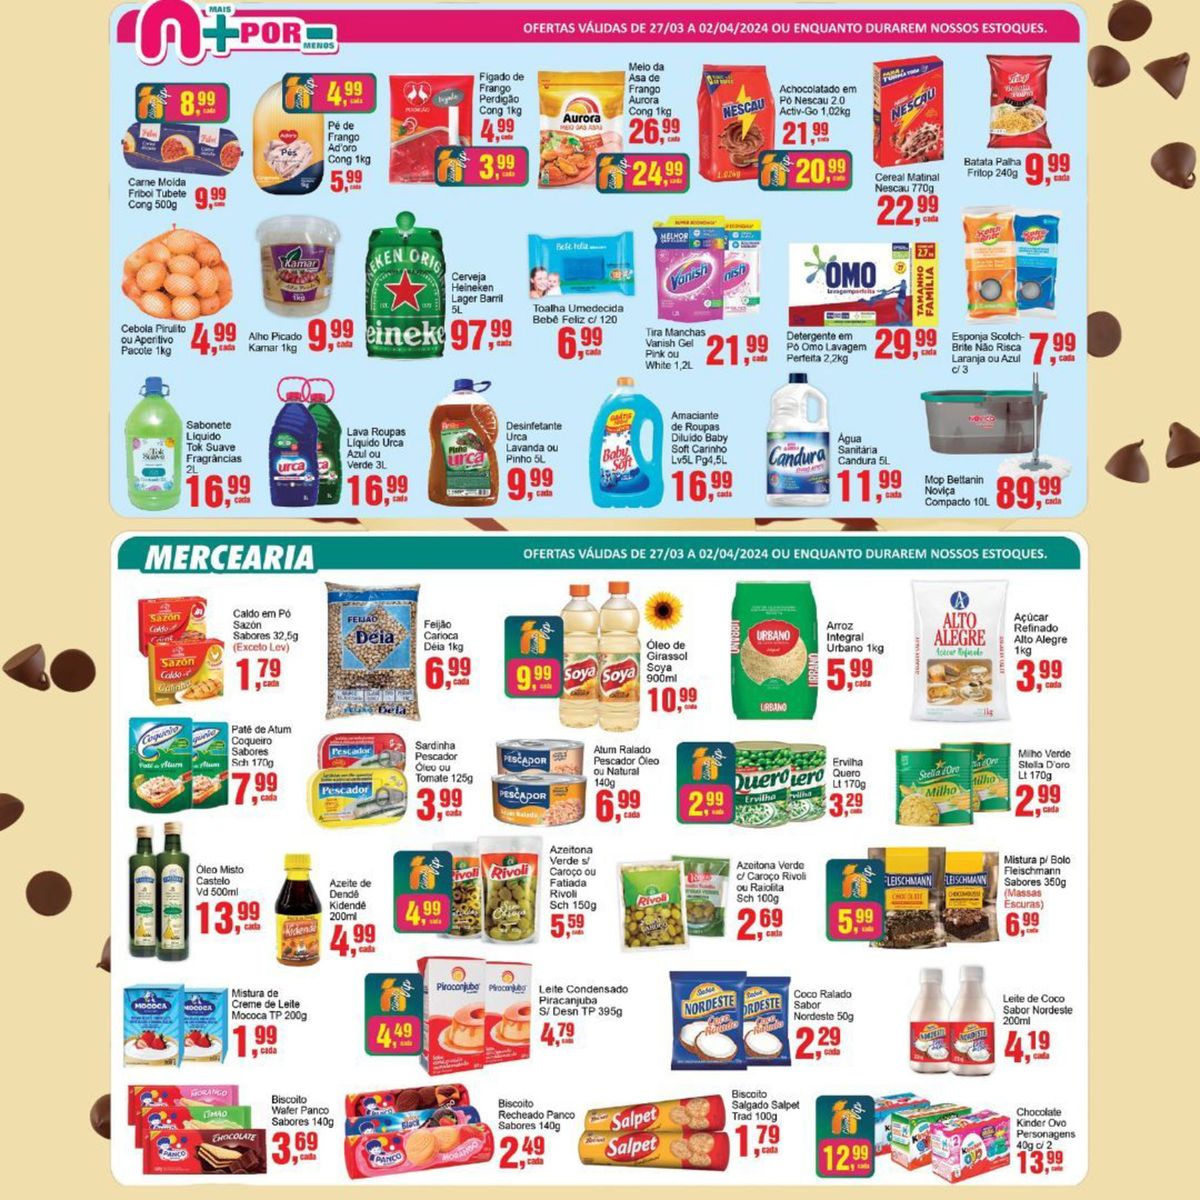 Ofertas de Supermercados em Pat de Atum, Mistura de Creme de Leite, Biscoto, Kidendo e Biscoto Rech